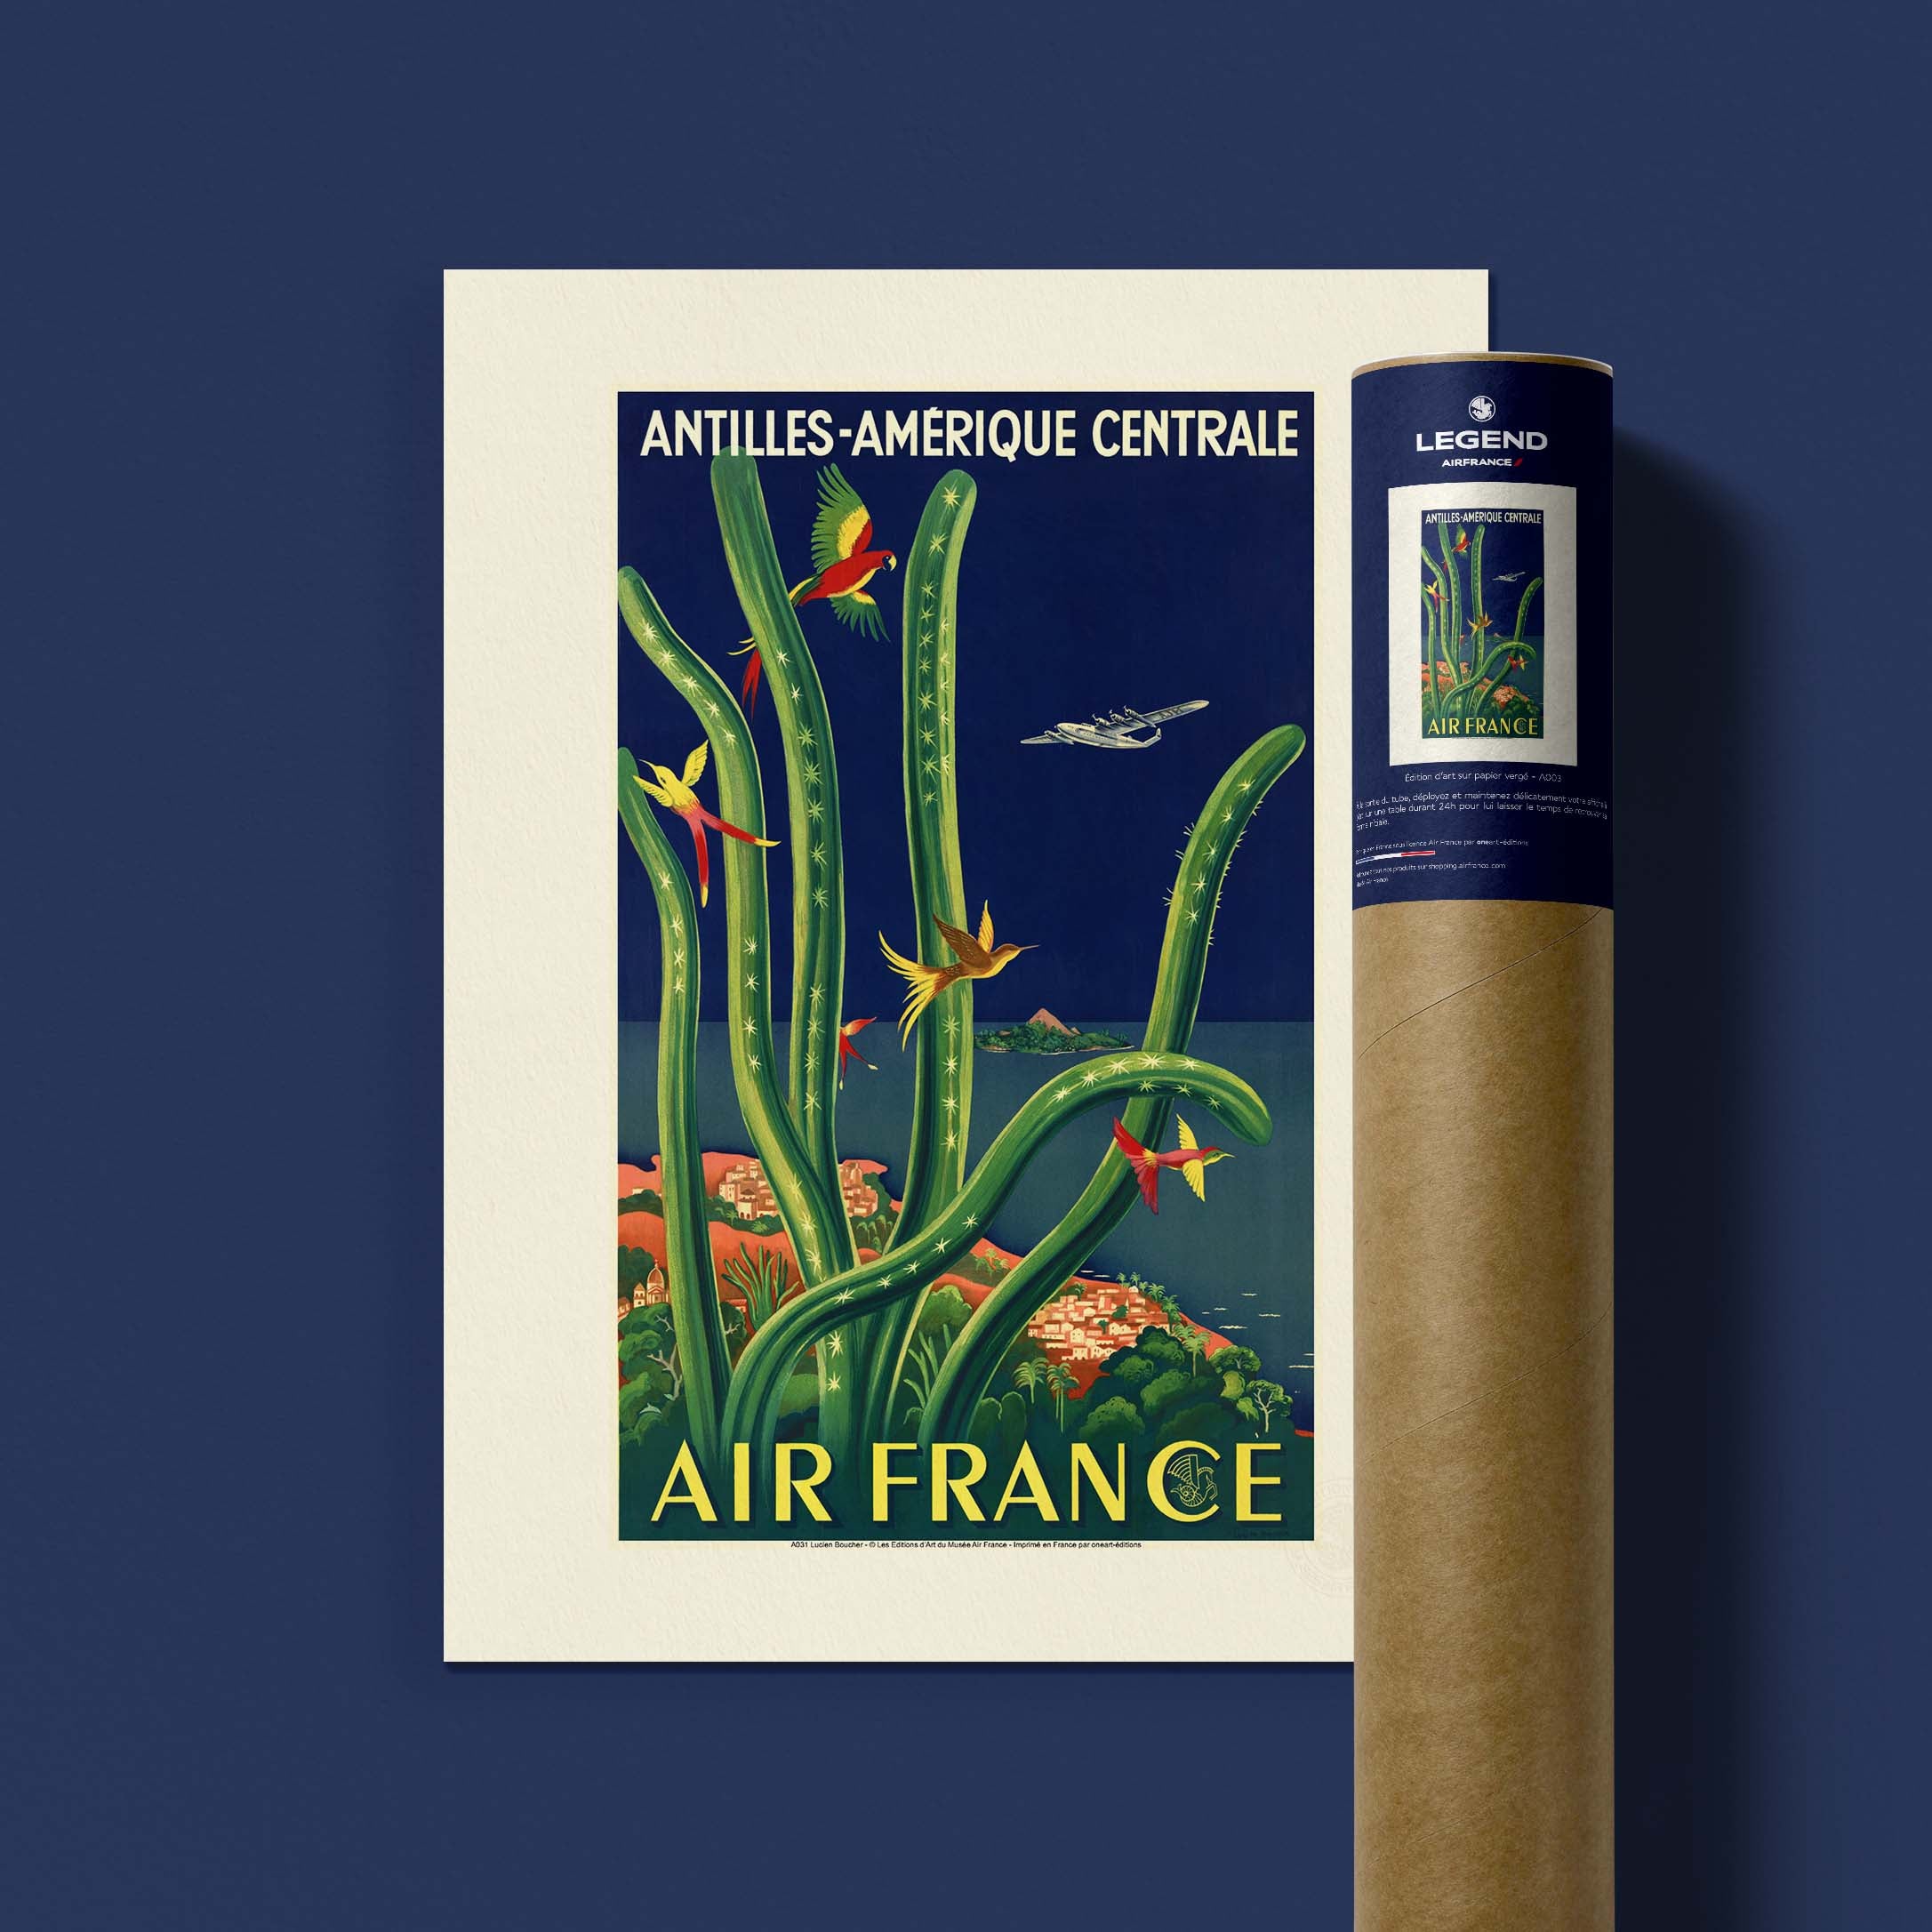 Affiche Air France - Antilles - Amérique Centrale-oneart.fr